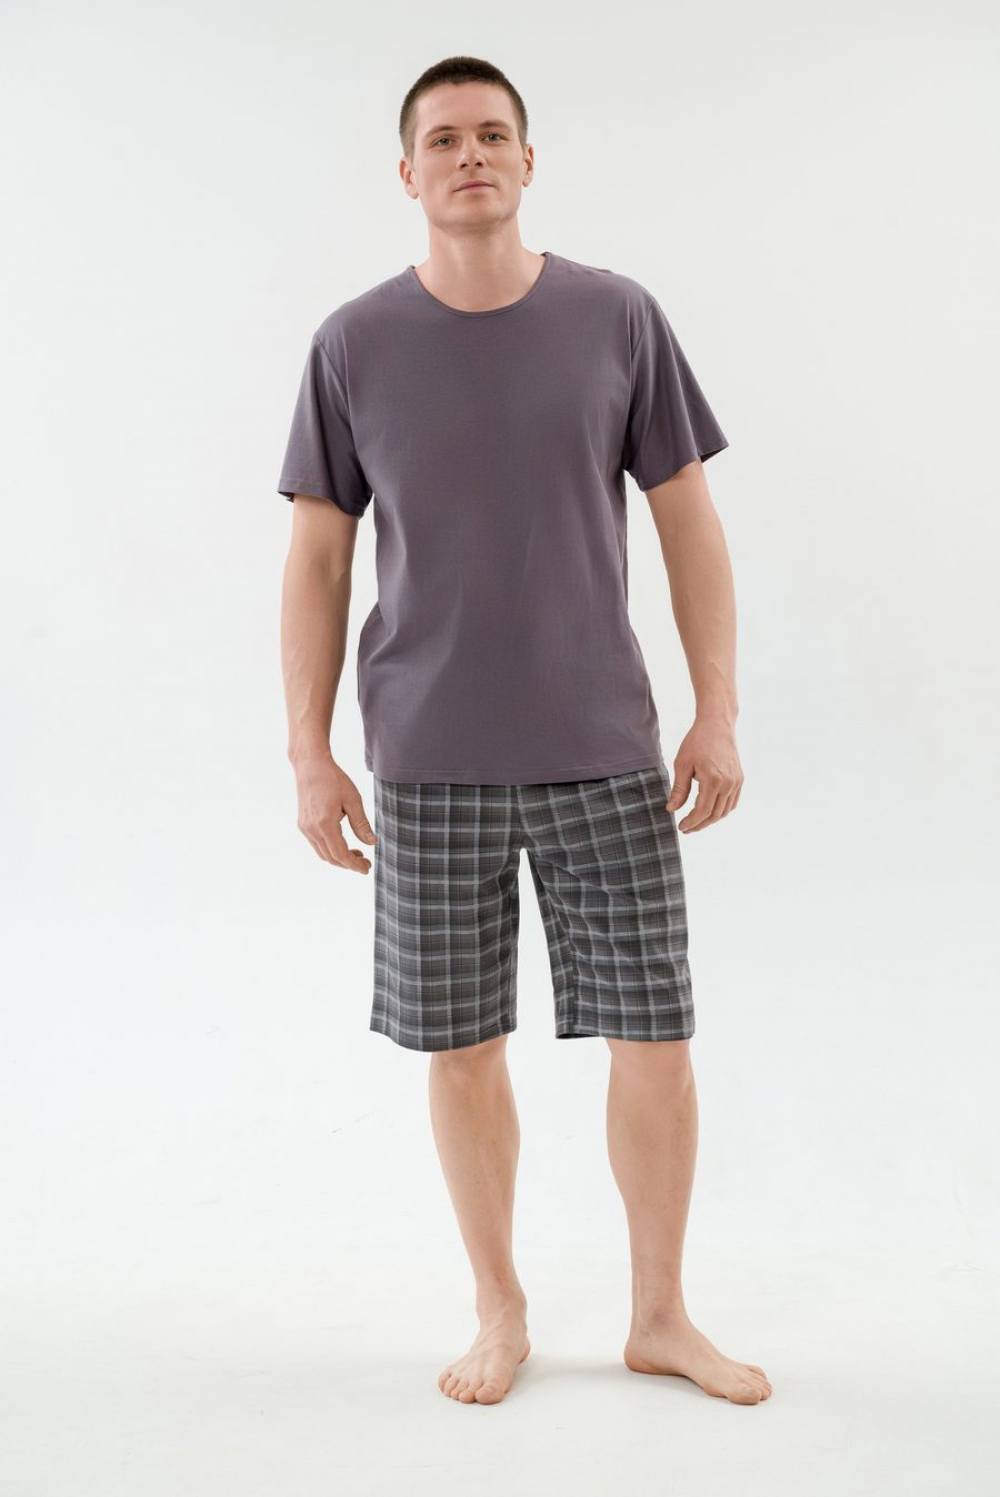 Пижама мужская с шортами. Артикул 000005430